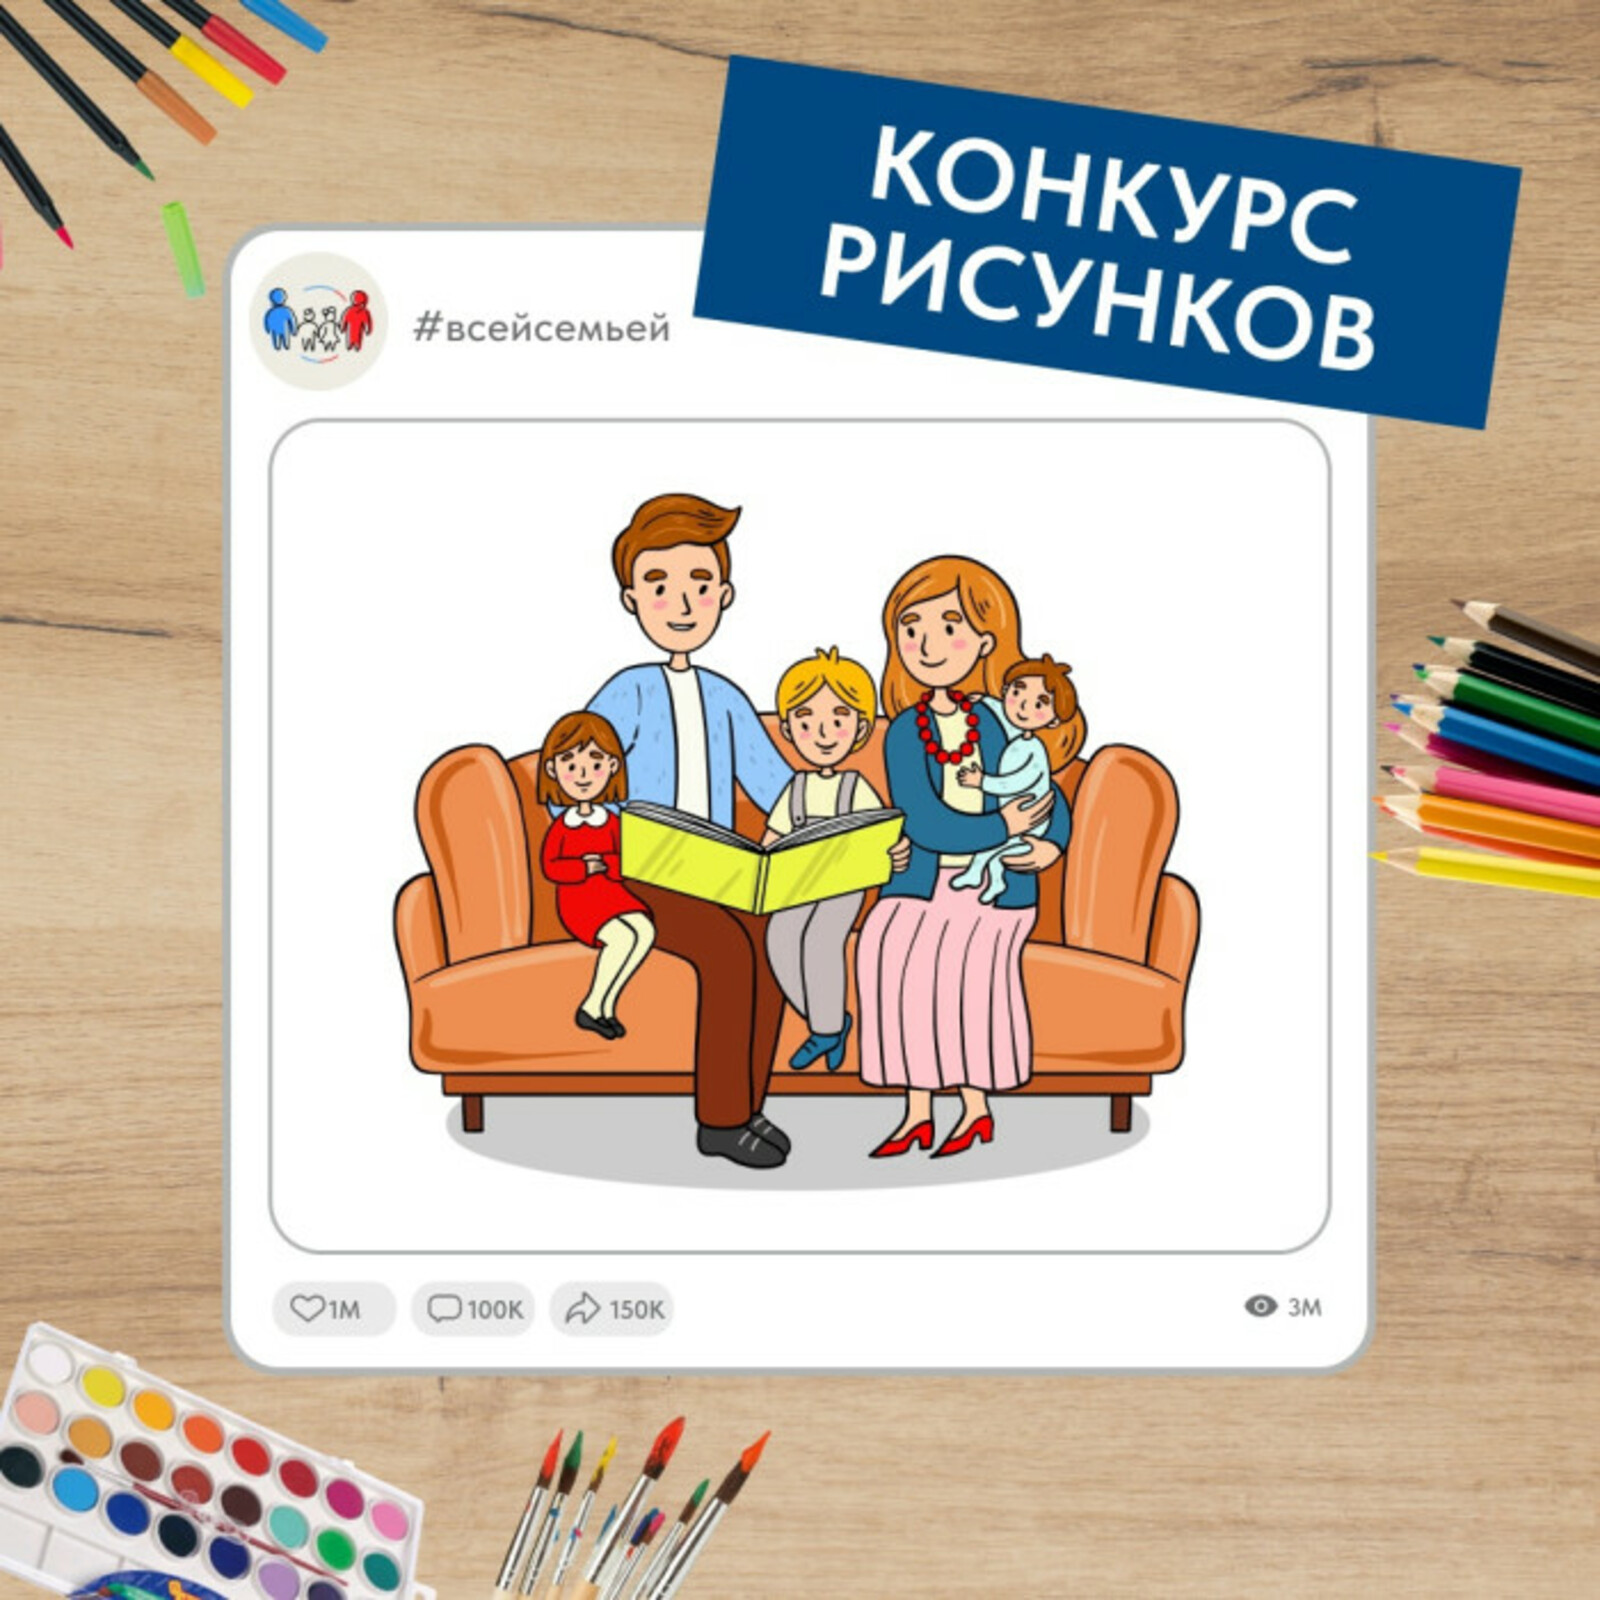 Проект «Всей семьёй» запустил новый конкурс для детей и их родителей со всей России